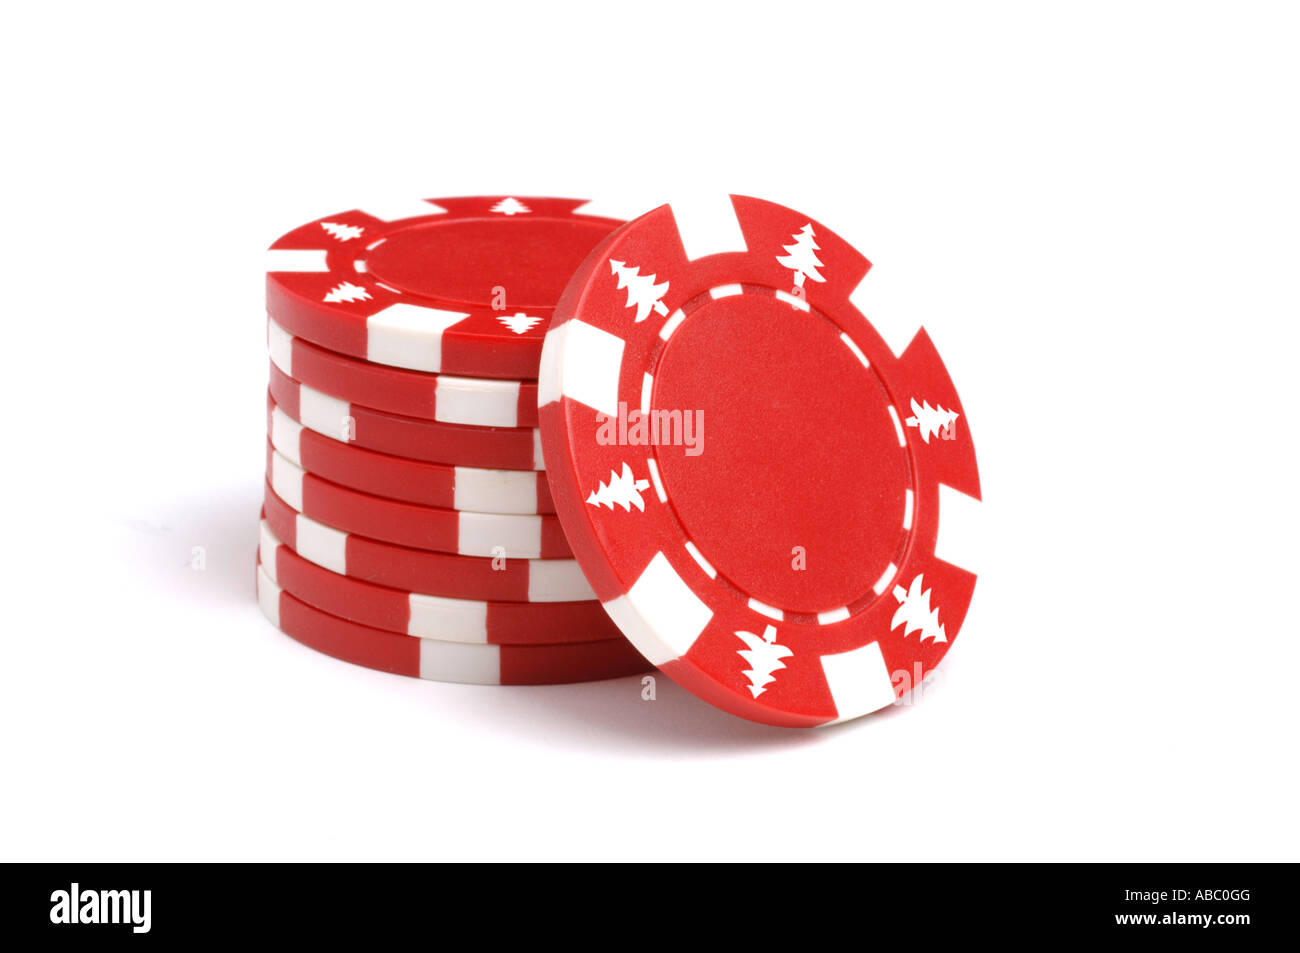 Jetons de poker rouge avec marquage de l'arbre de Noël Banque D'Images